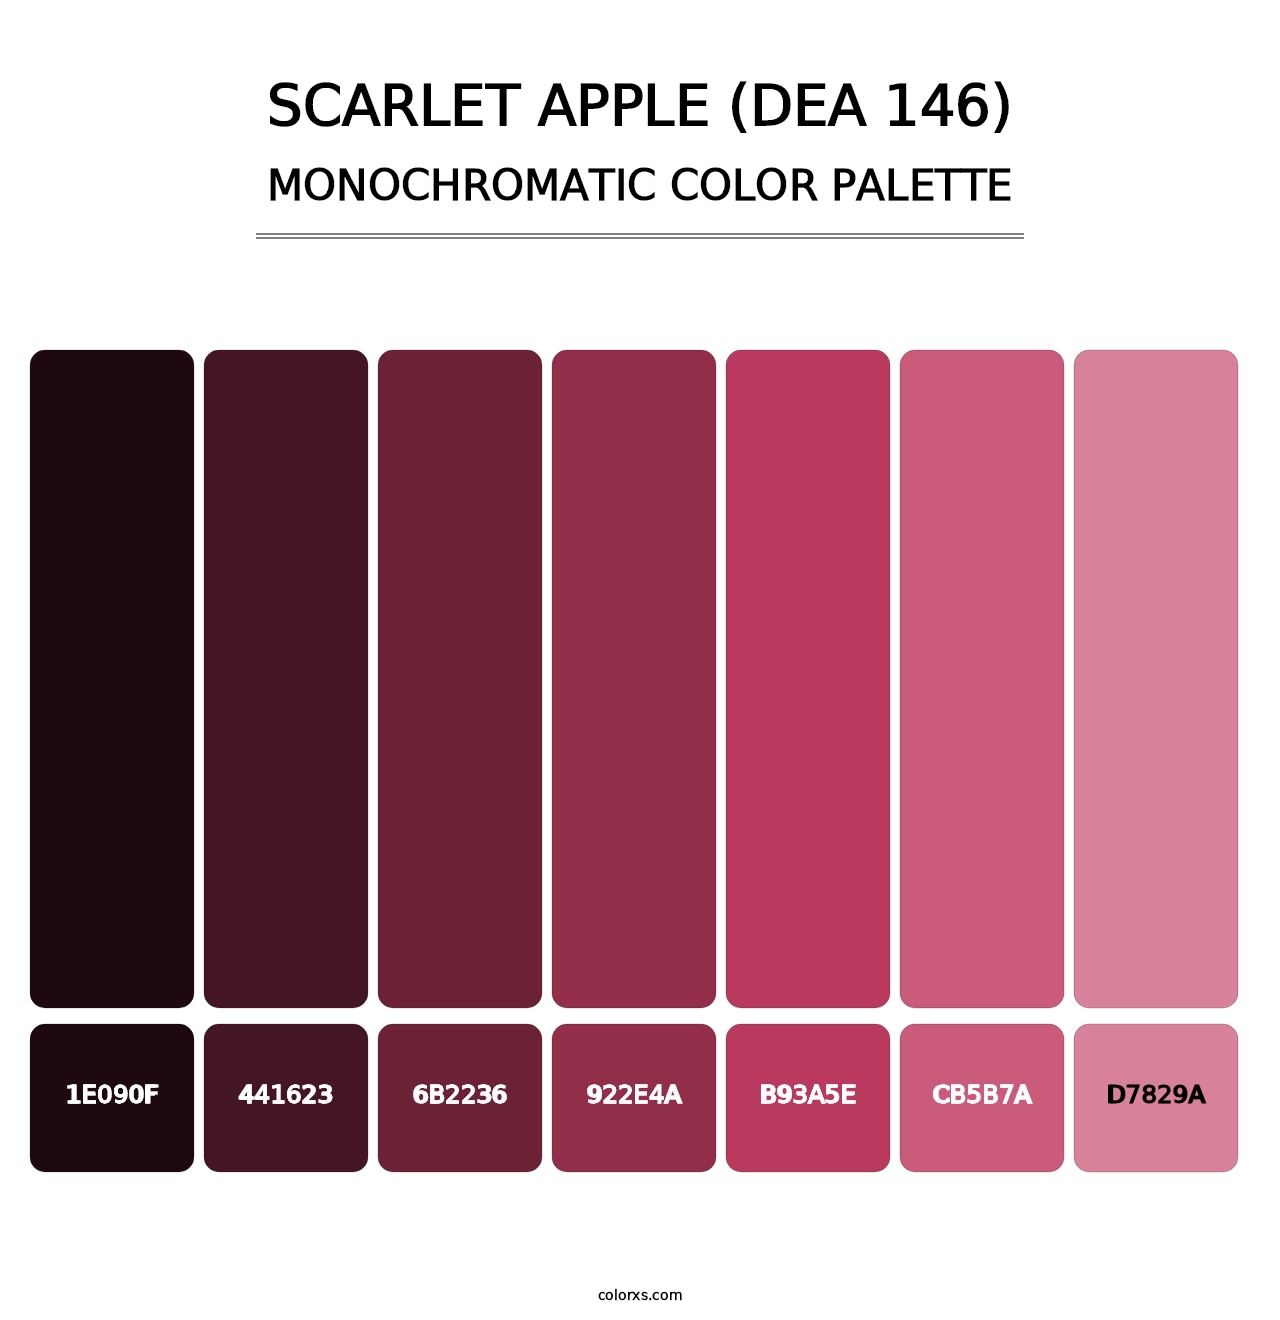 Scarlet Apple (DEA 146) - Monochromatic Color Palette